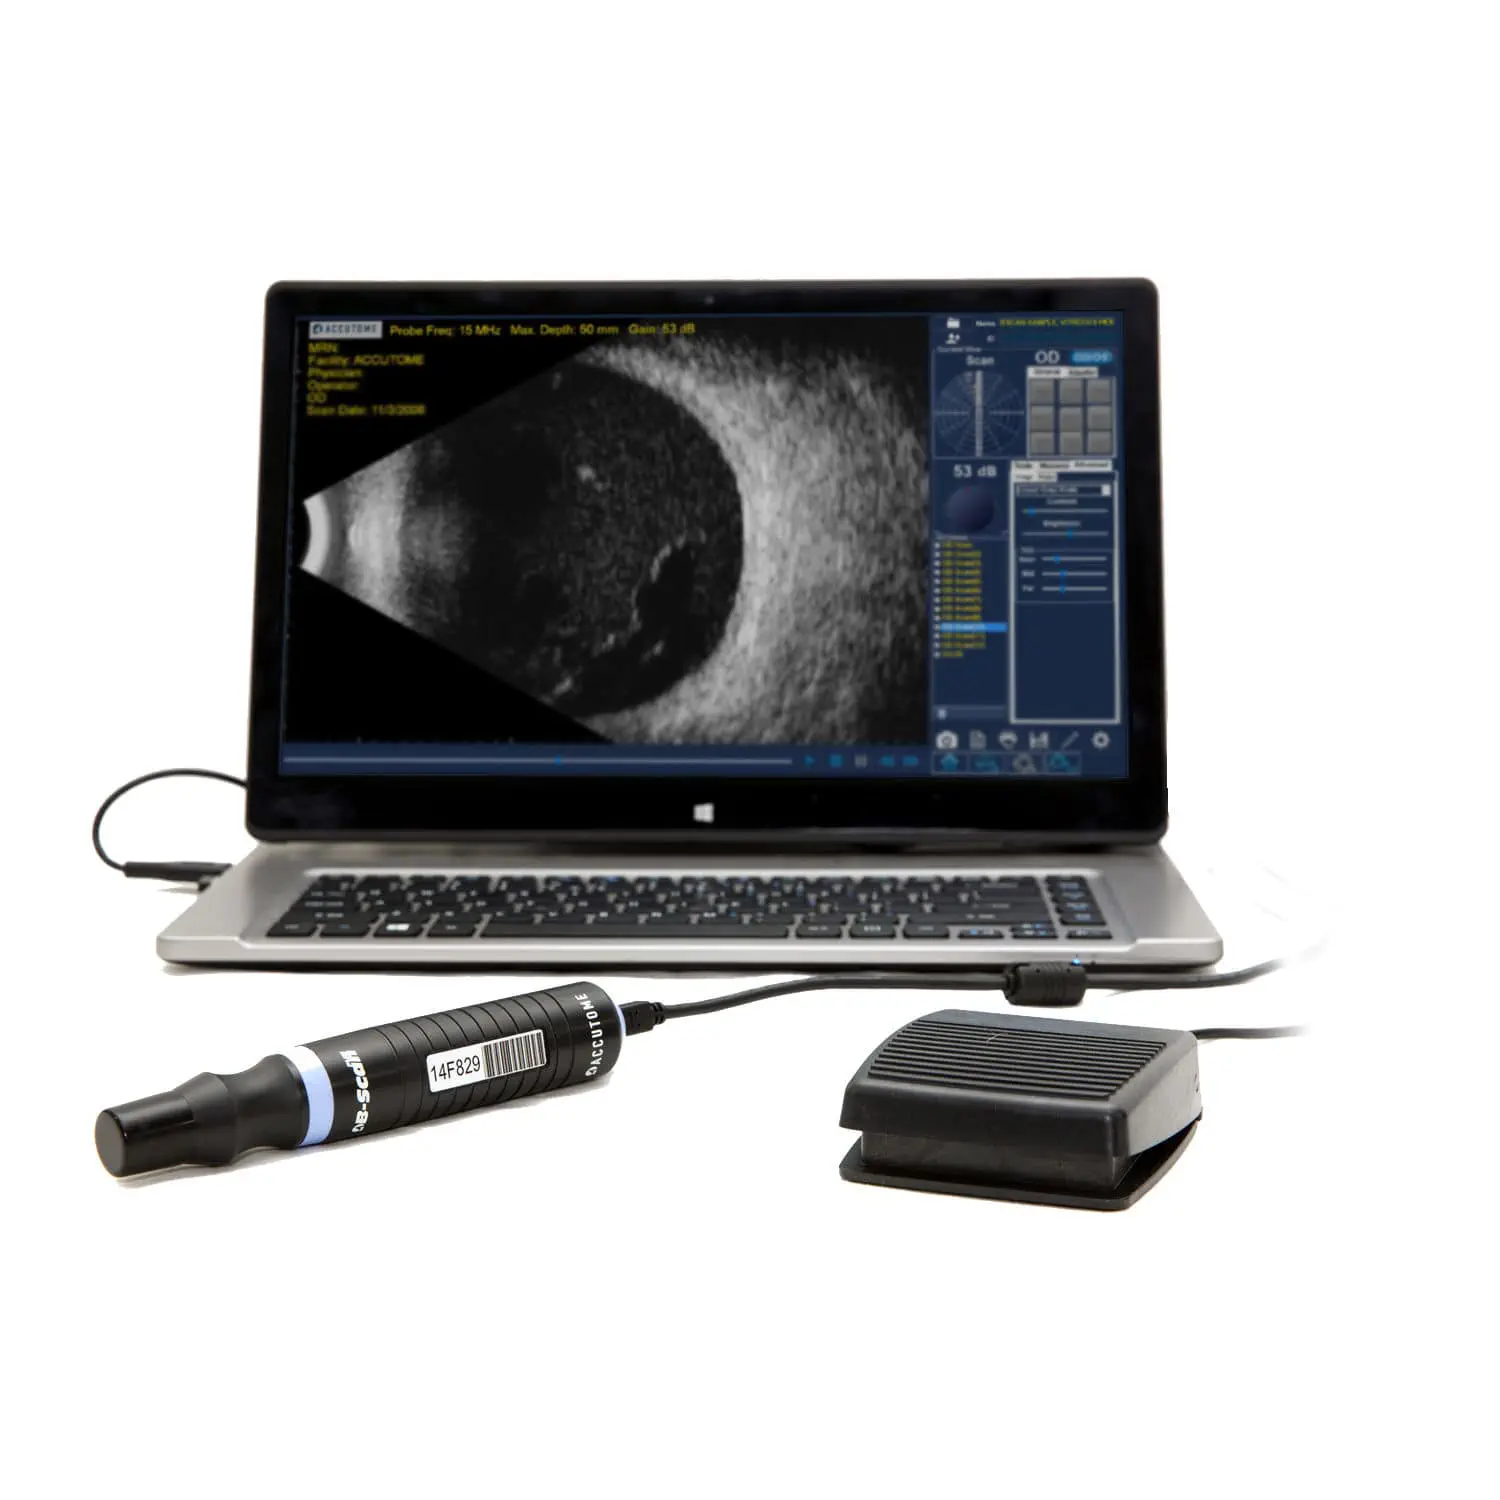 เครื่องตรวจอวัยวะภายในด้วยคลื่นเสียงความคมชัดสูง  On-platform, tabletop ultrasound system B-Scan Plus  Keeler